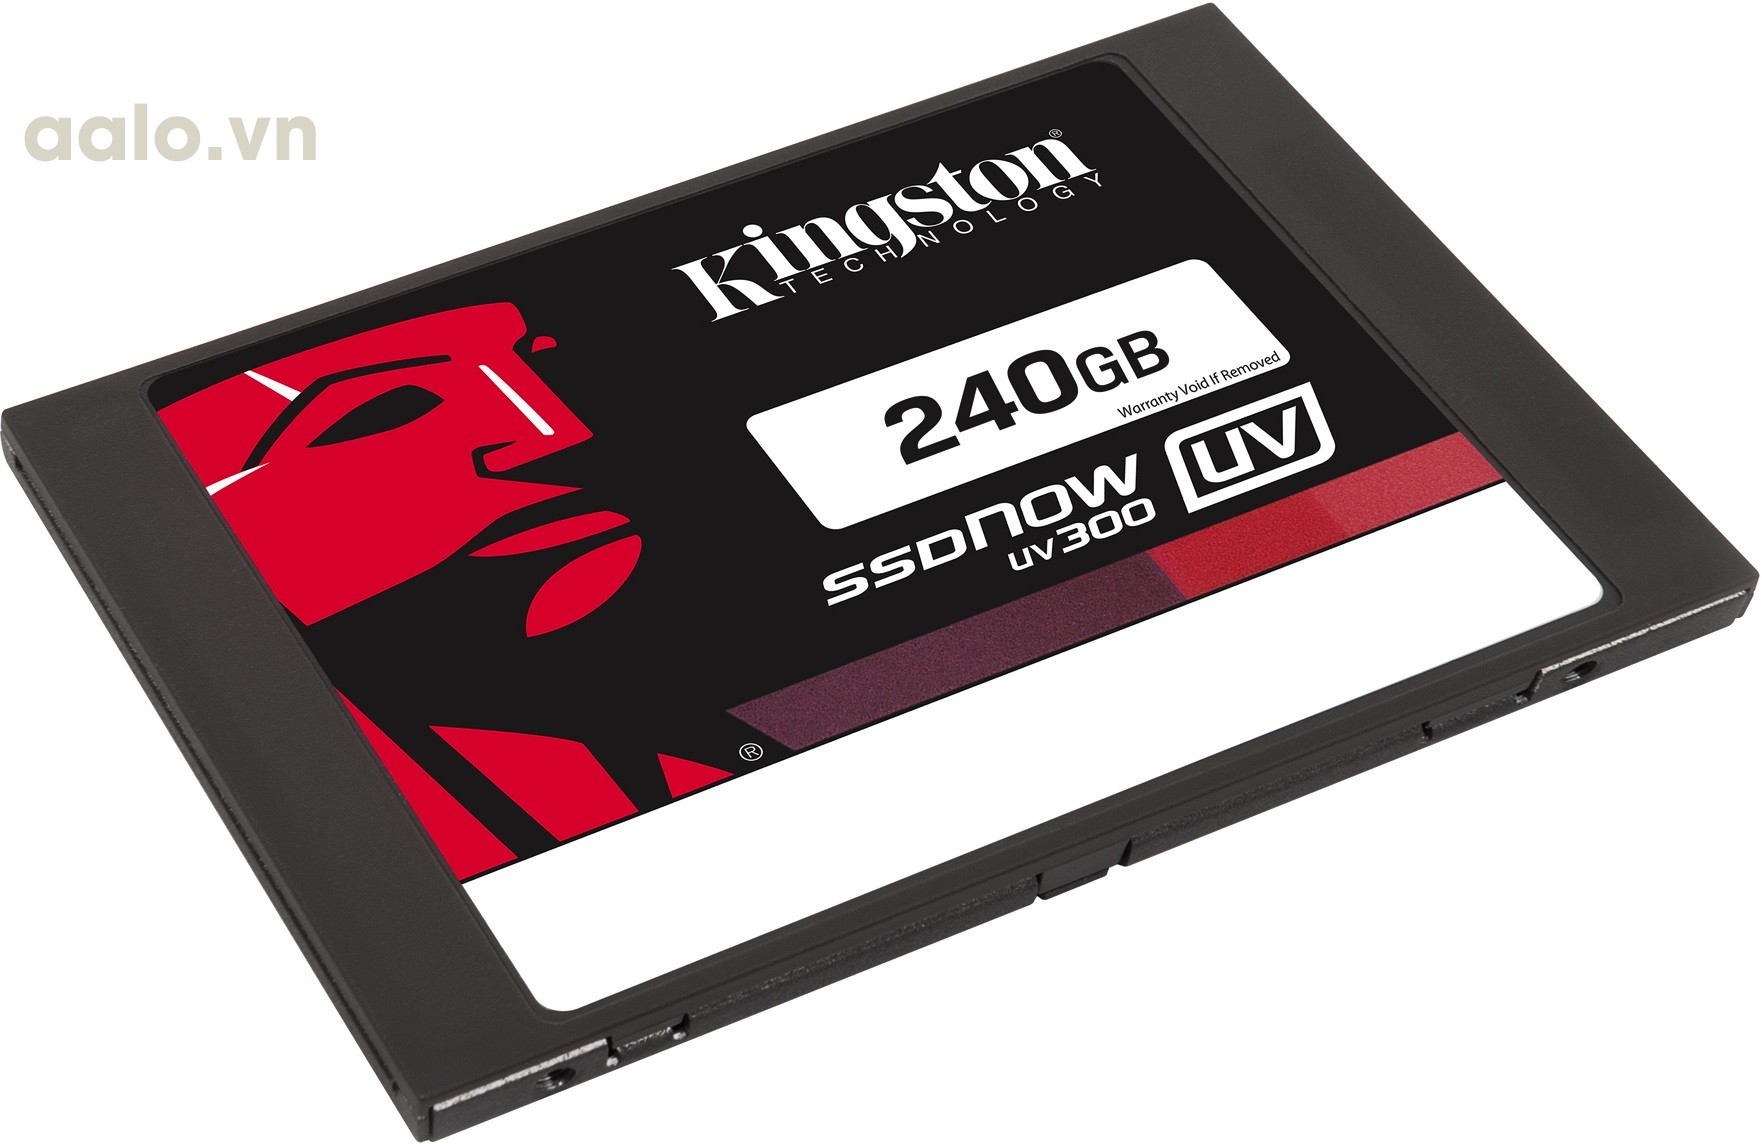 Ổ cứng Kingston SSD 240GB  